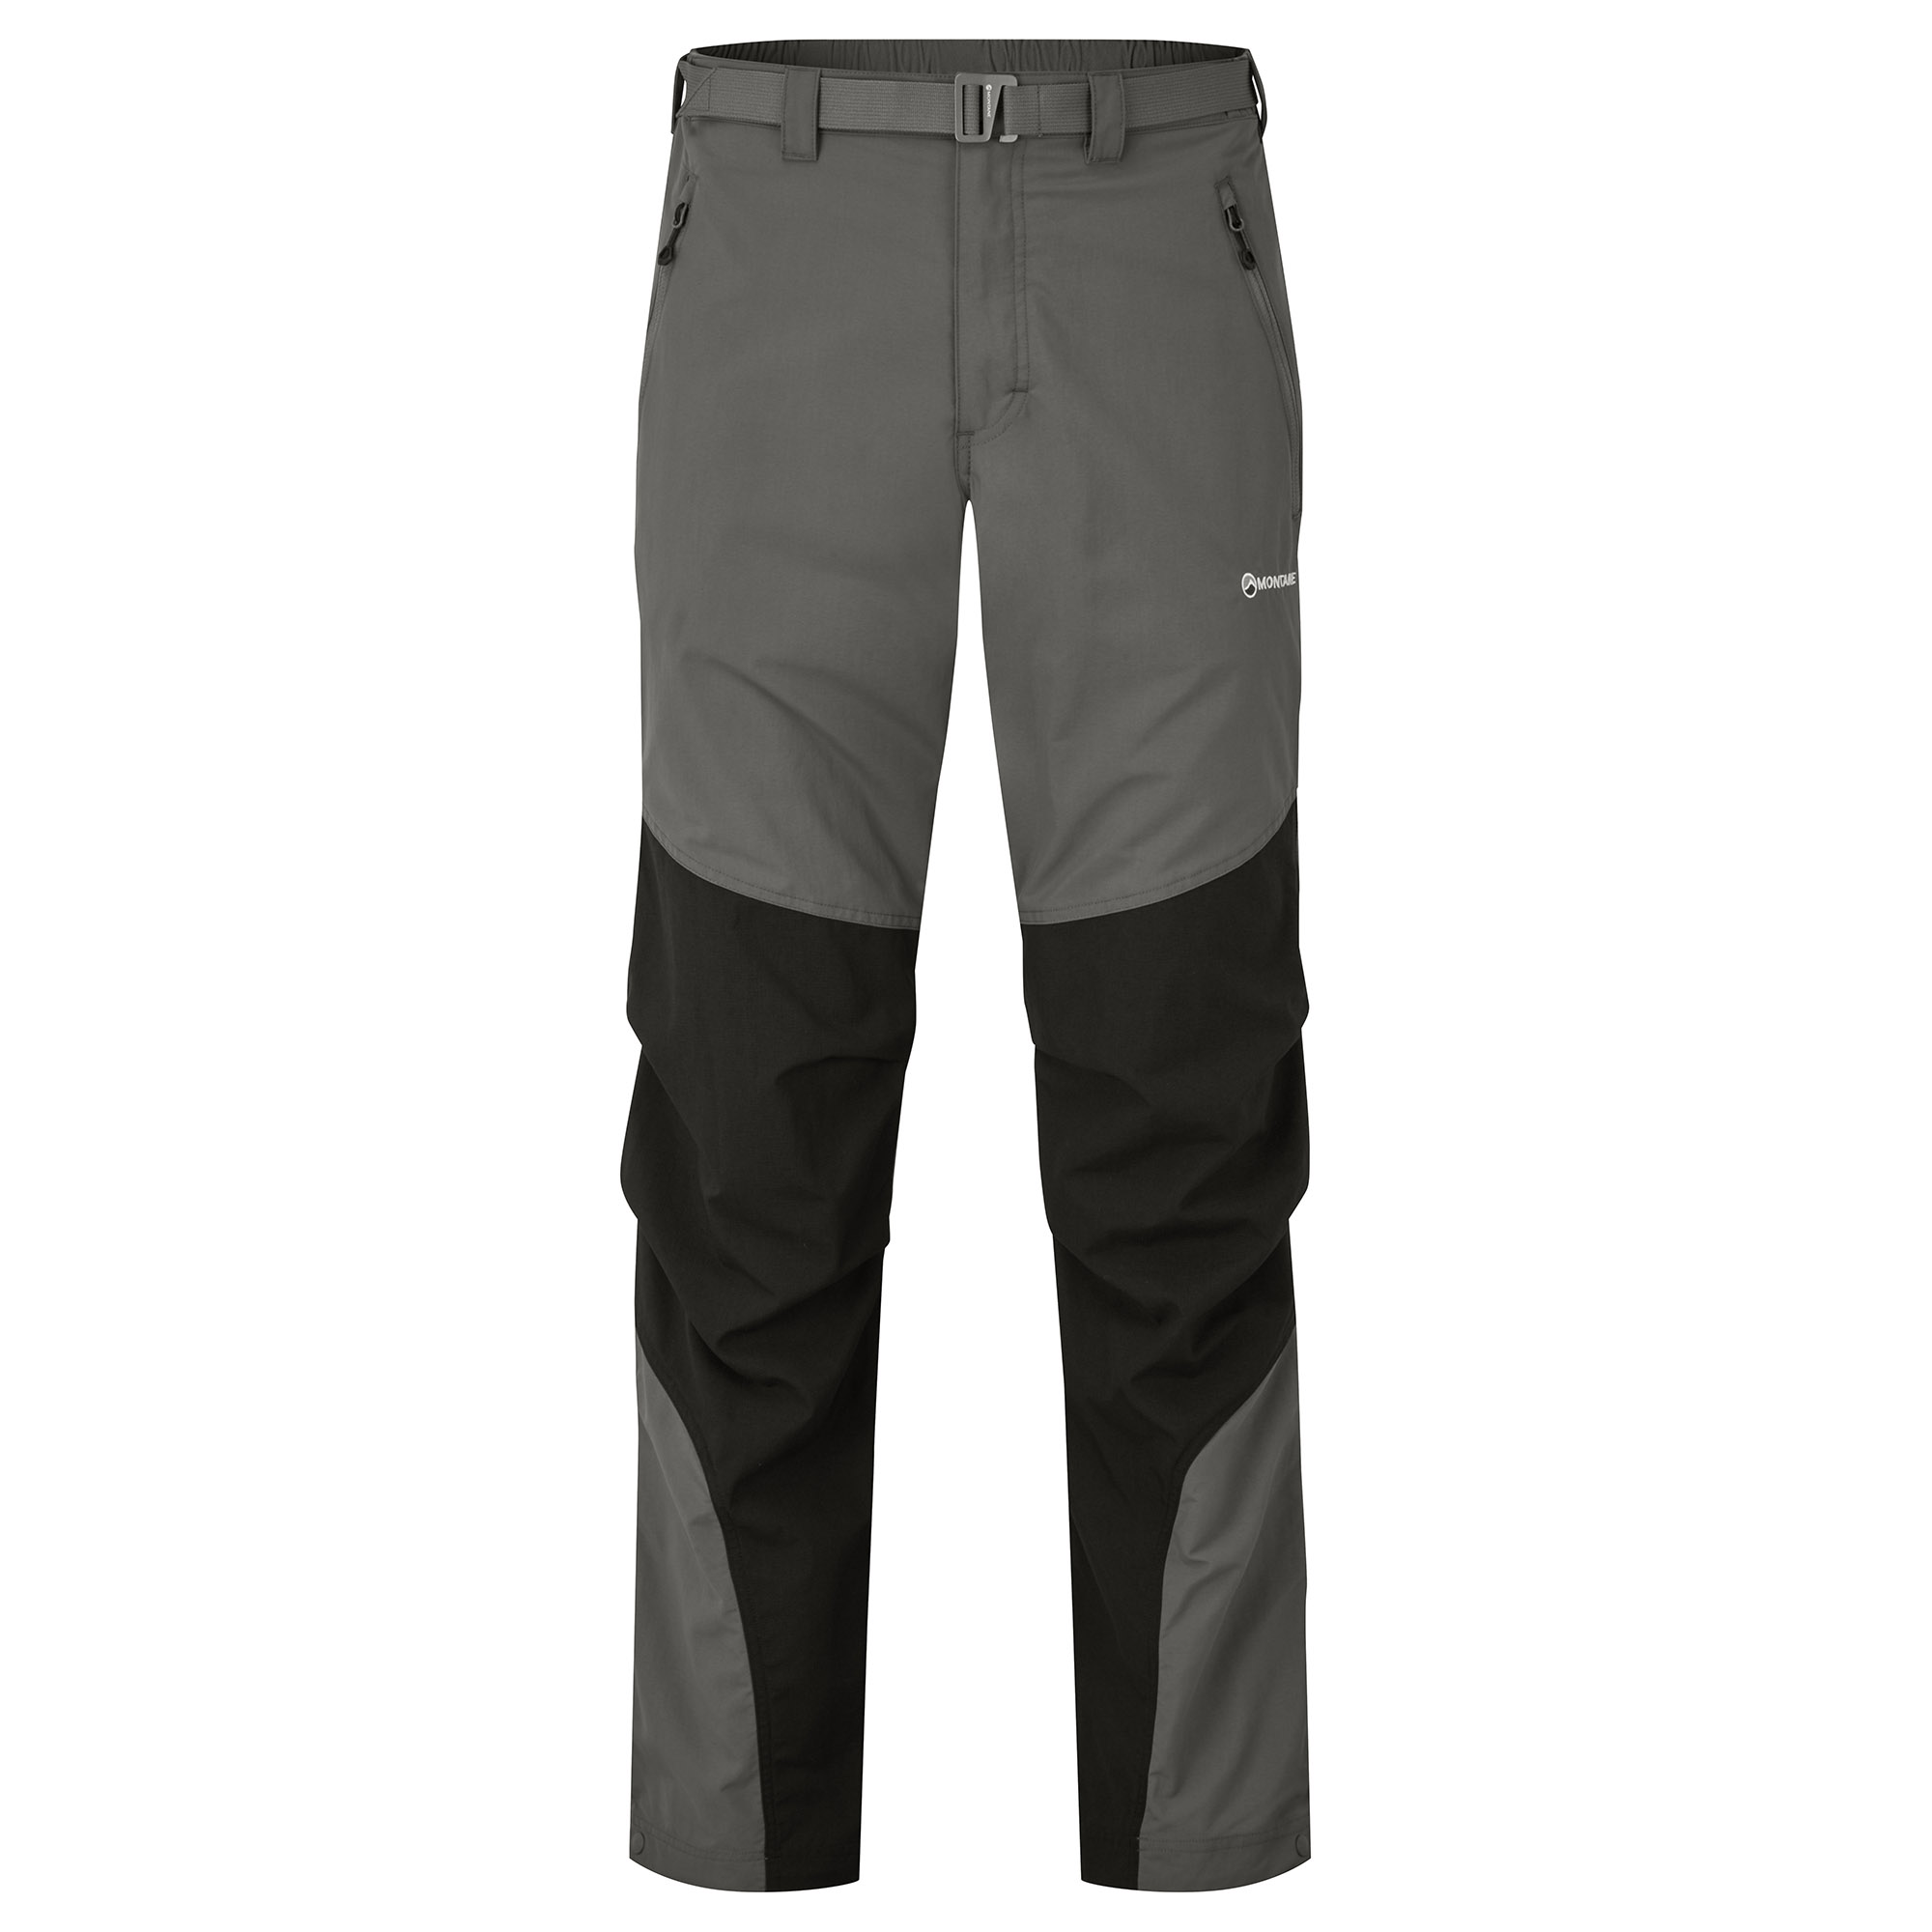 Montane pánské softshellové kalhoty Terra Pants - Prodloužené Nohavice Barva: graphite, Velikost: 30